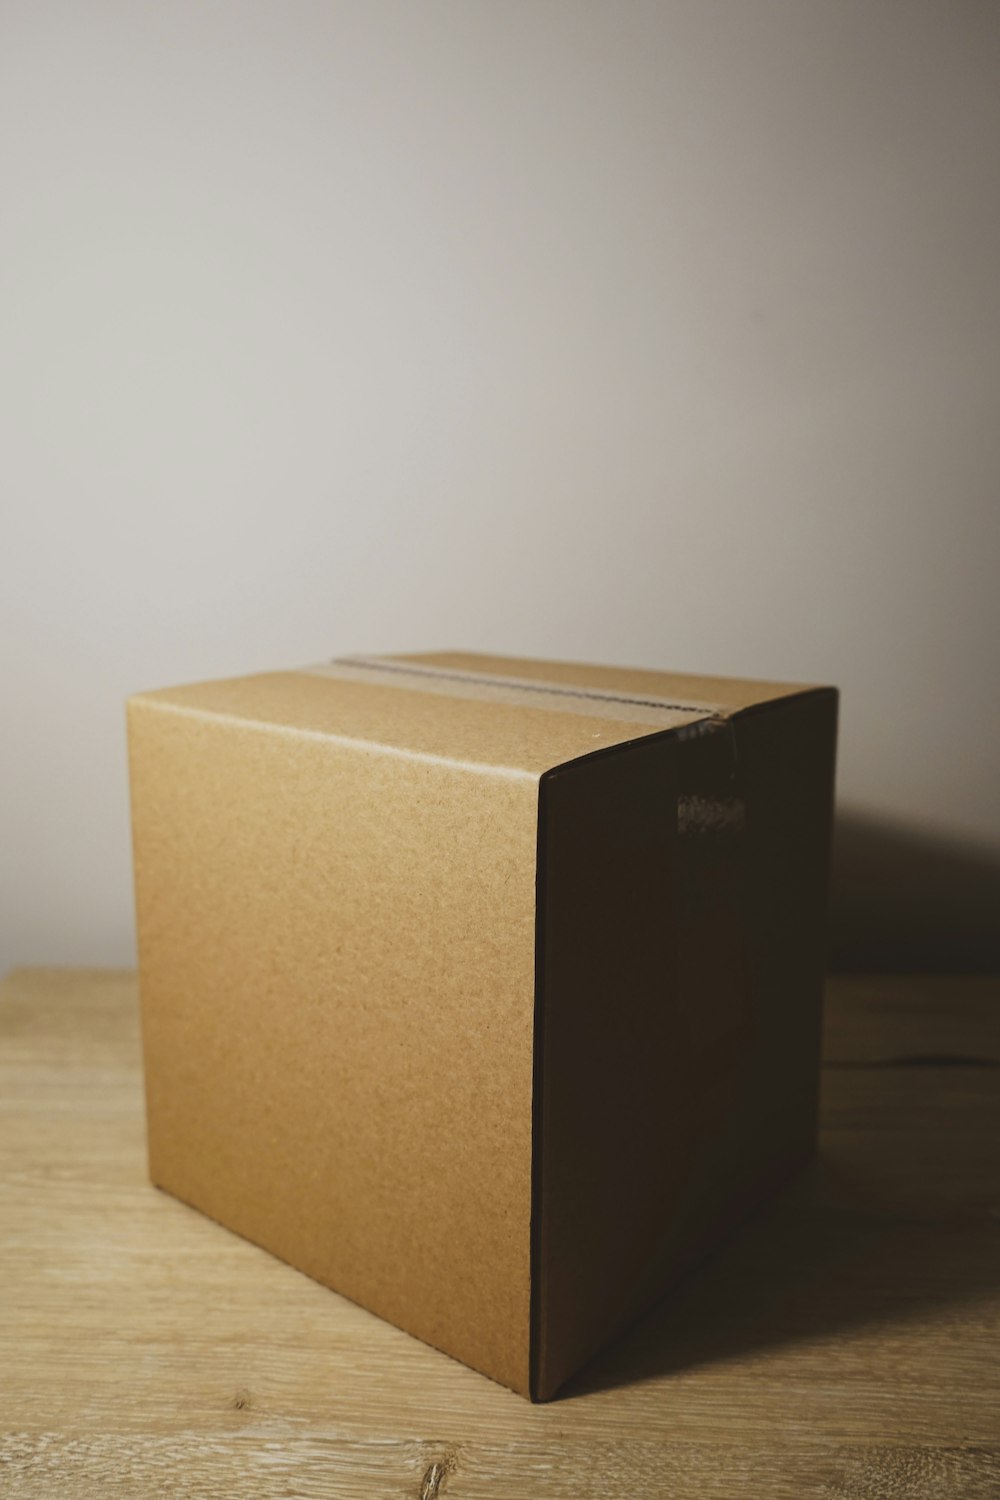 Foto de enfoque superficial de una caja de cartón marrón